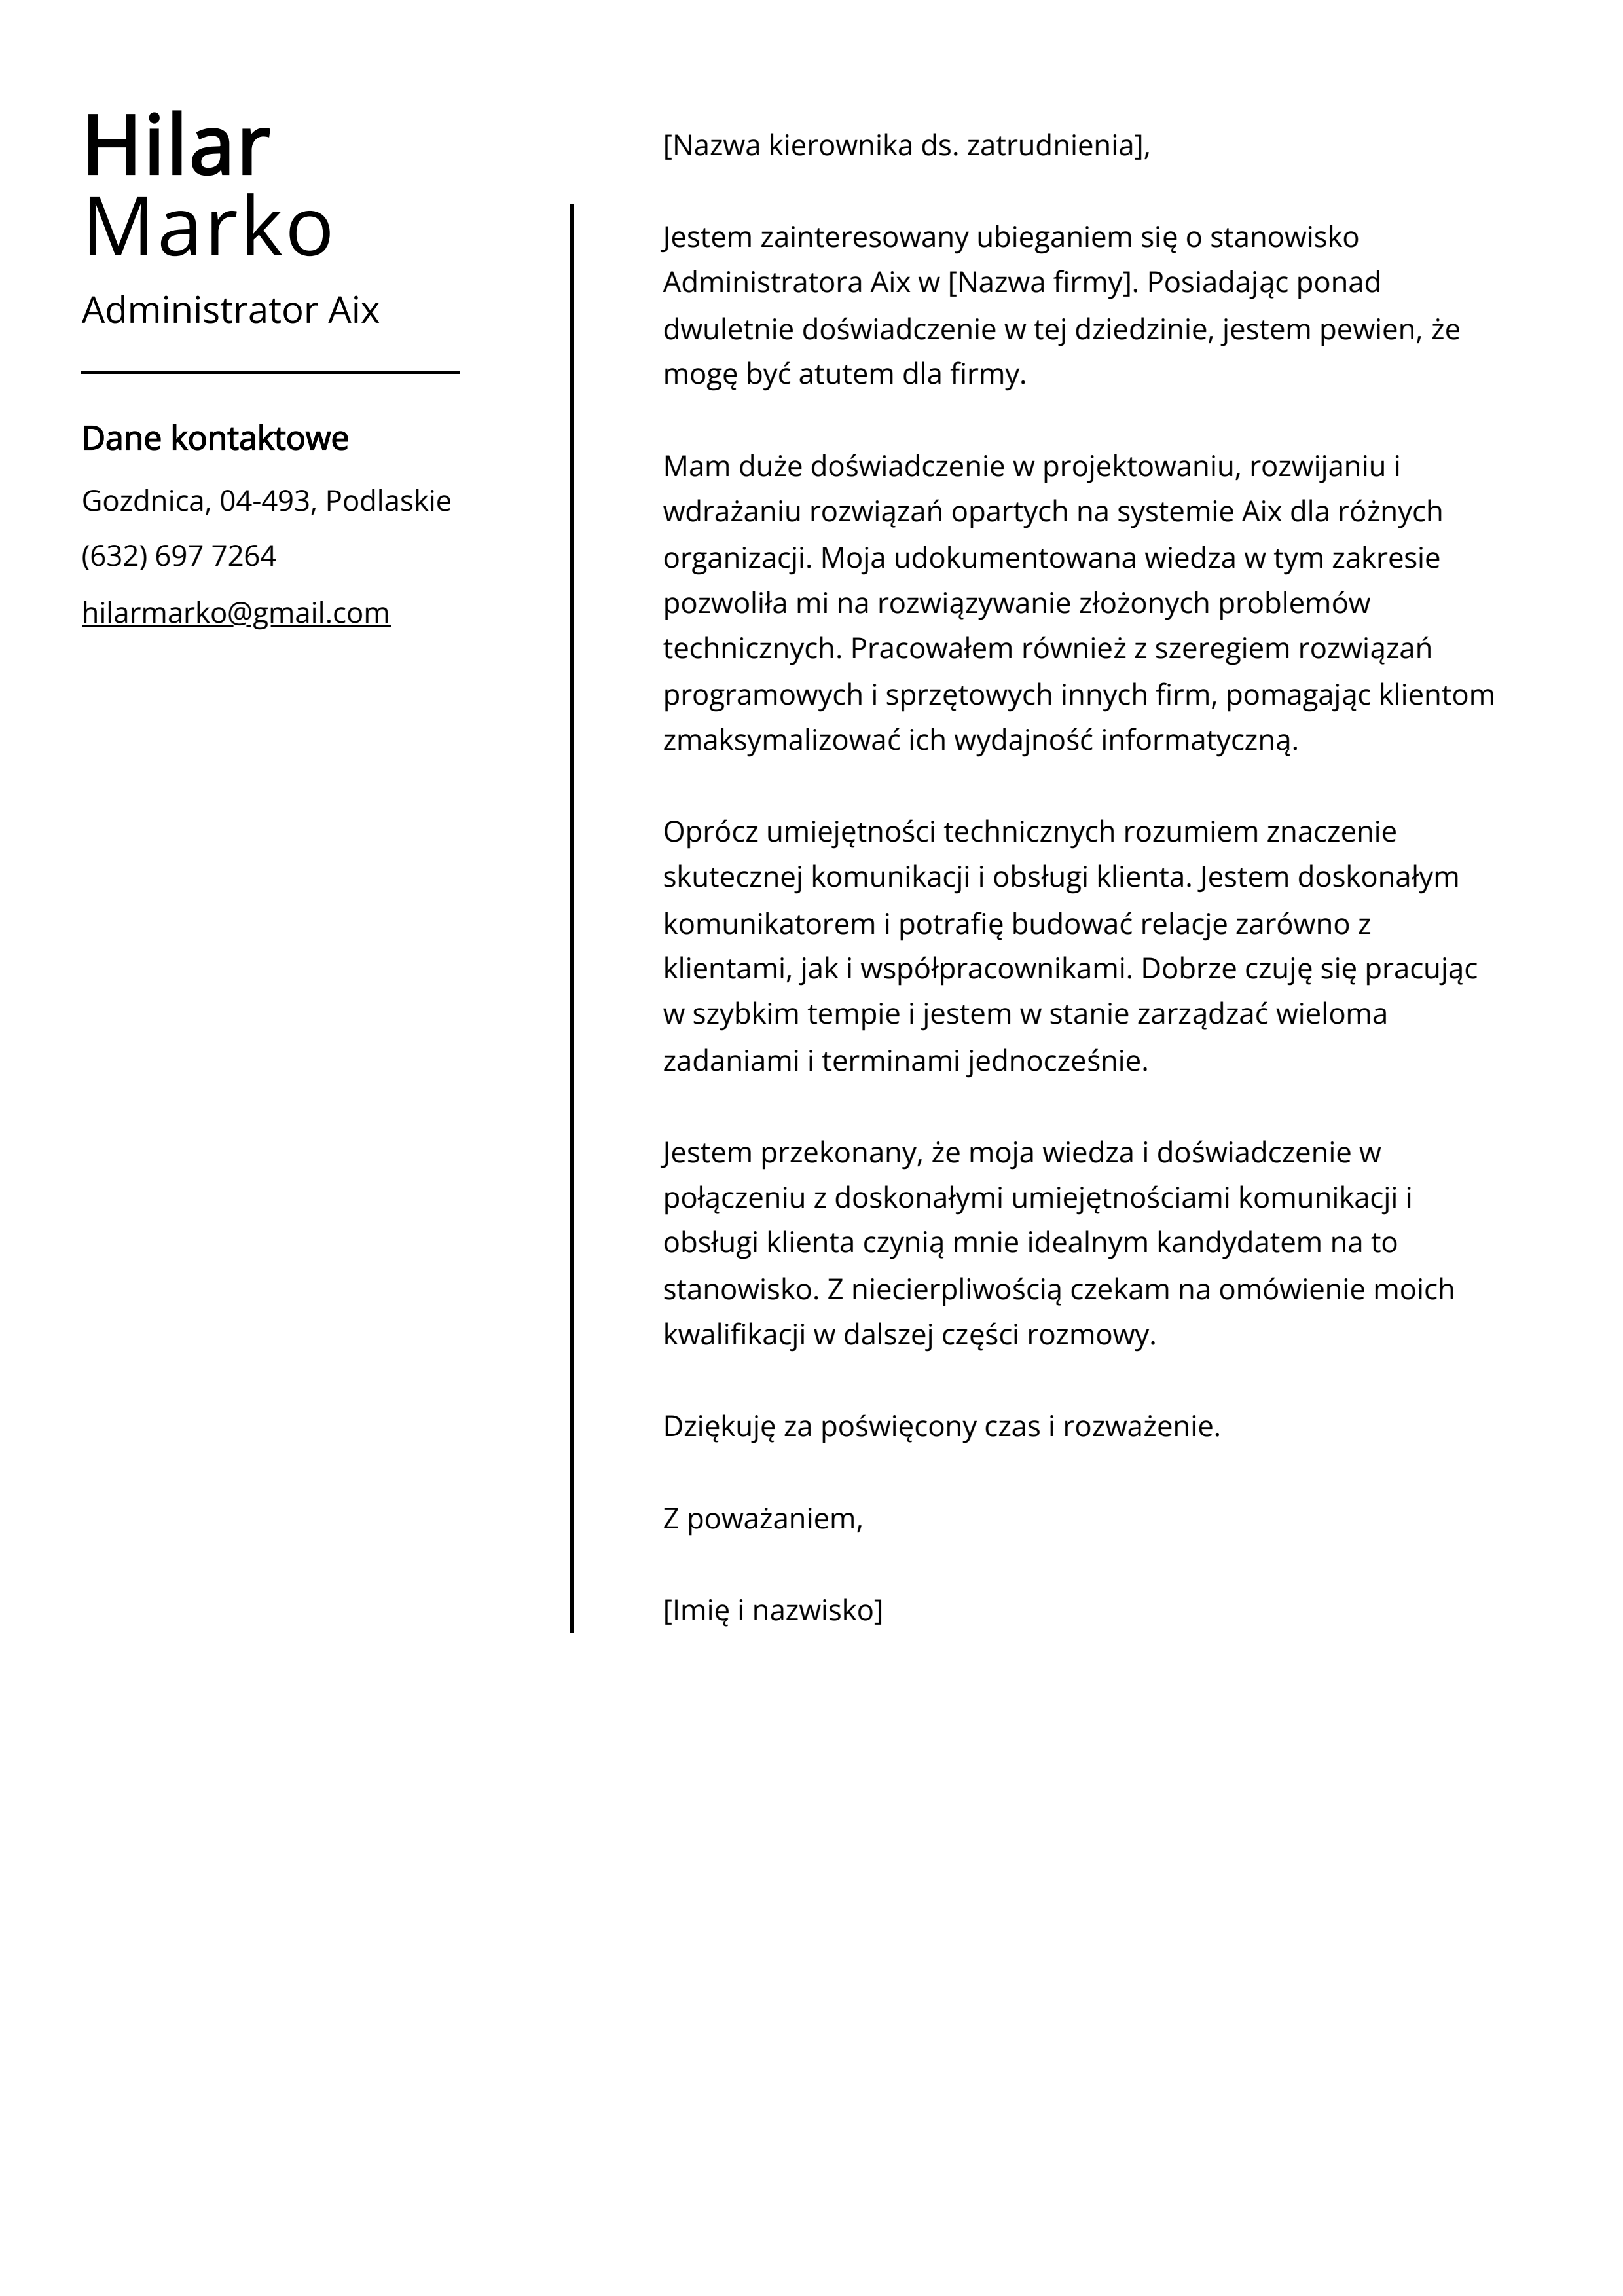 Przykład listu motywacyjnego administratora Aix